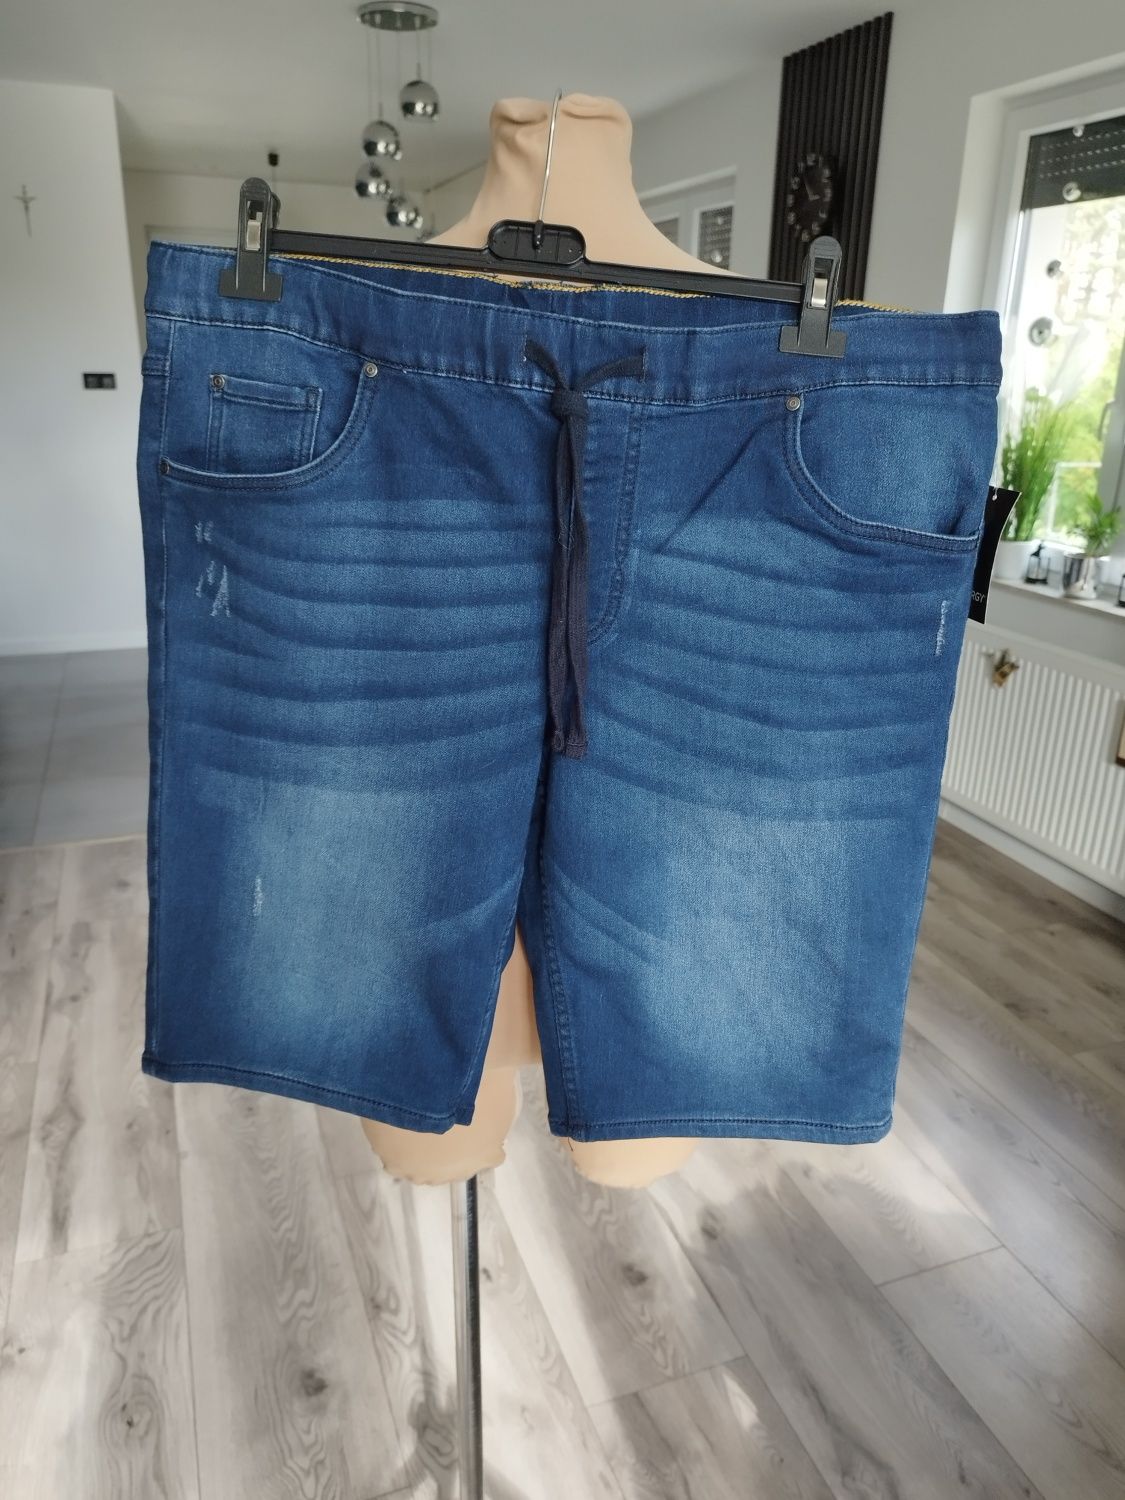 R.XXL nowe spodenki męskie miękki jeans